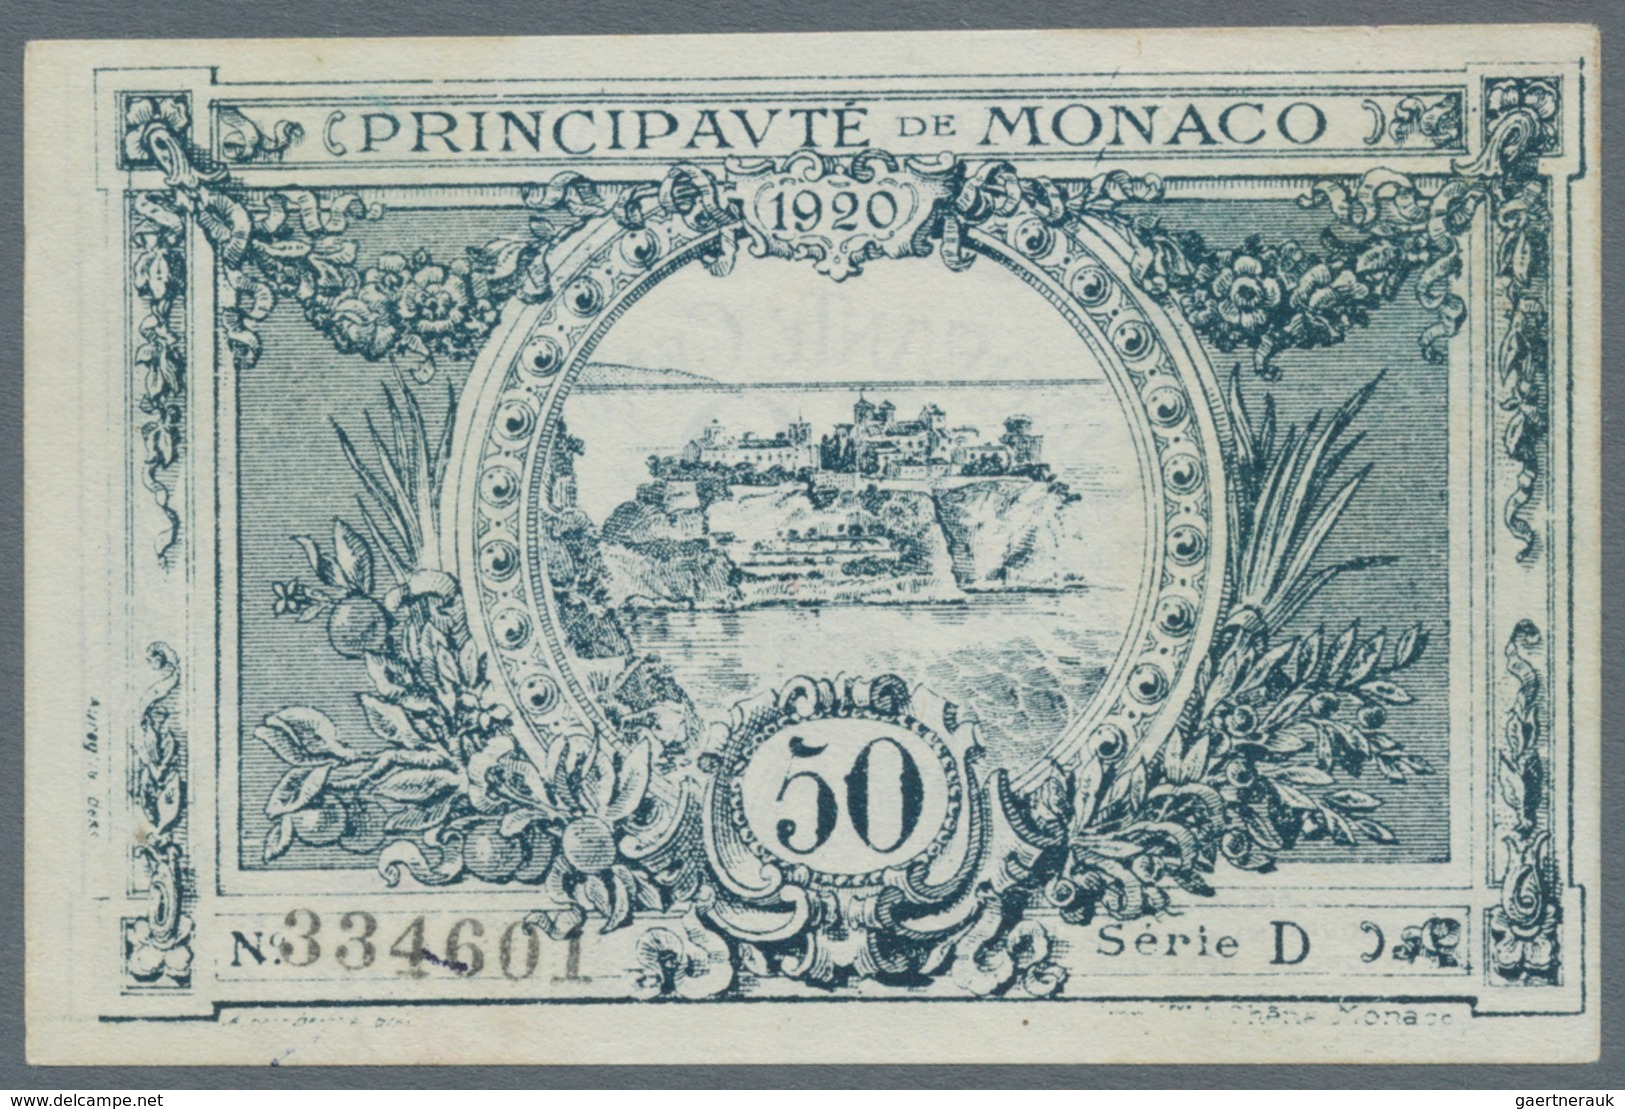 Monaco: 50 Centimes 1920 P. 3, Series D, In Condition: UNC. - Monaco